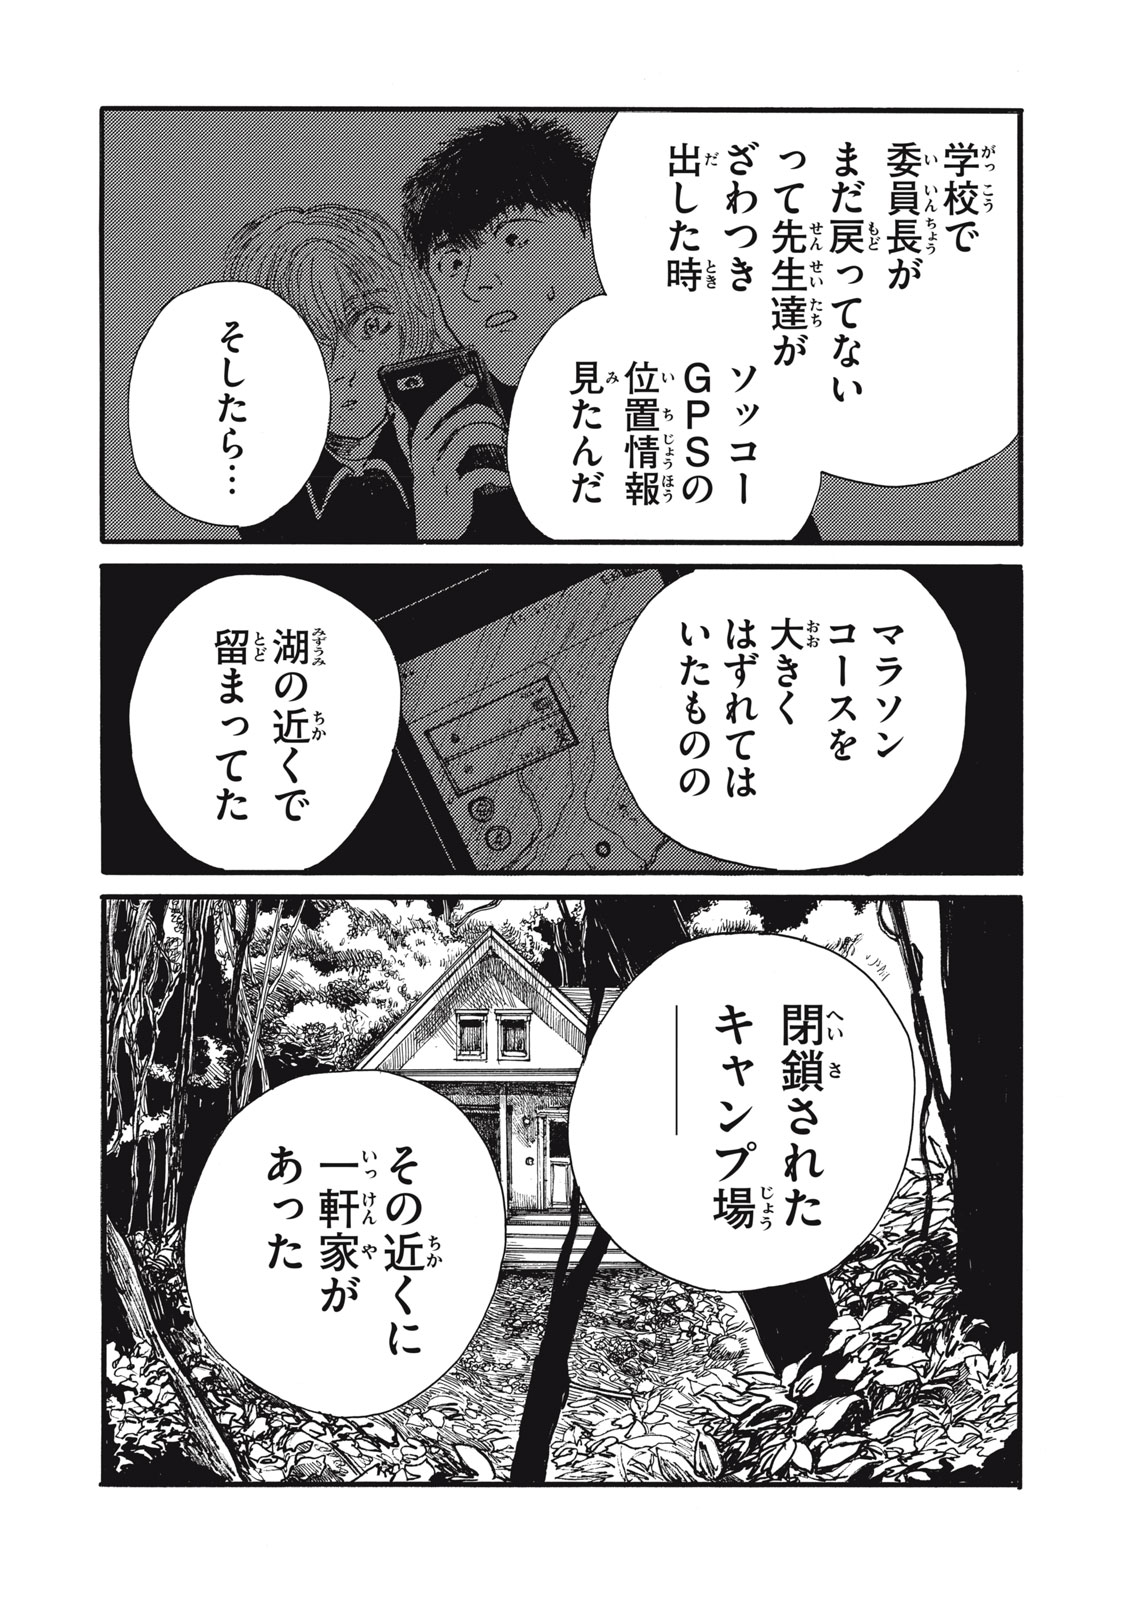 Watashi no Hara no Naka no Bakemono - Chapter 26 - Page 4